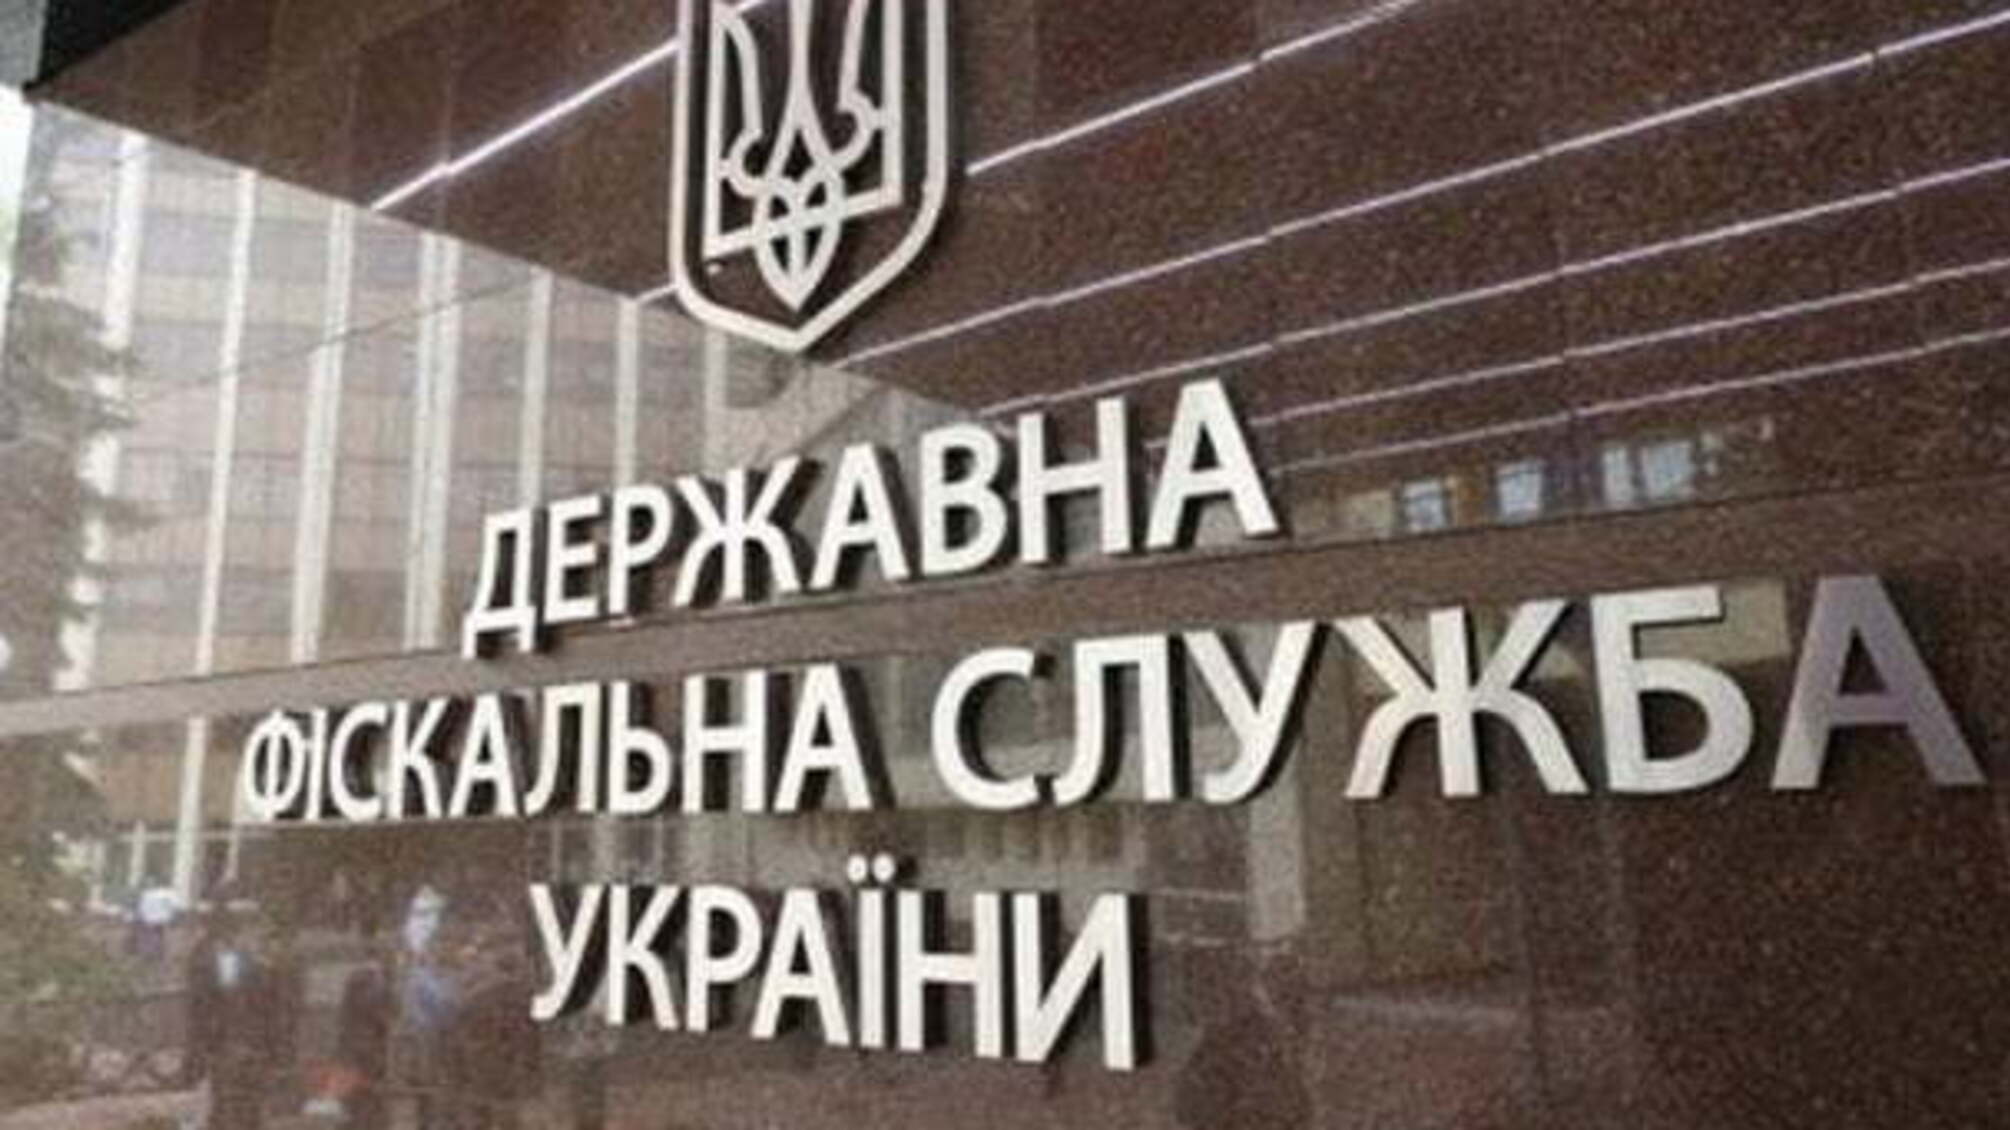 Новини ДФС: у Києві викрили підприємство в ухиленні від сплати податків на 18,6 млн гривень